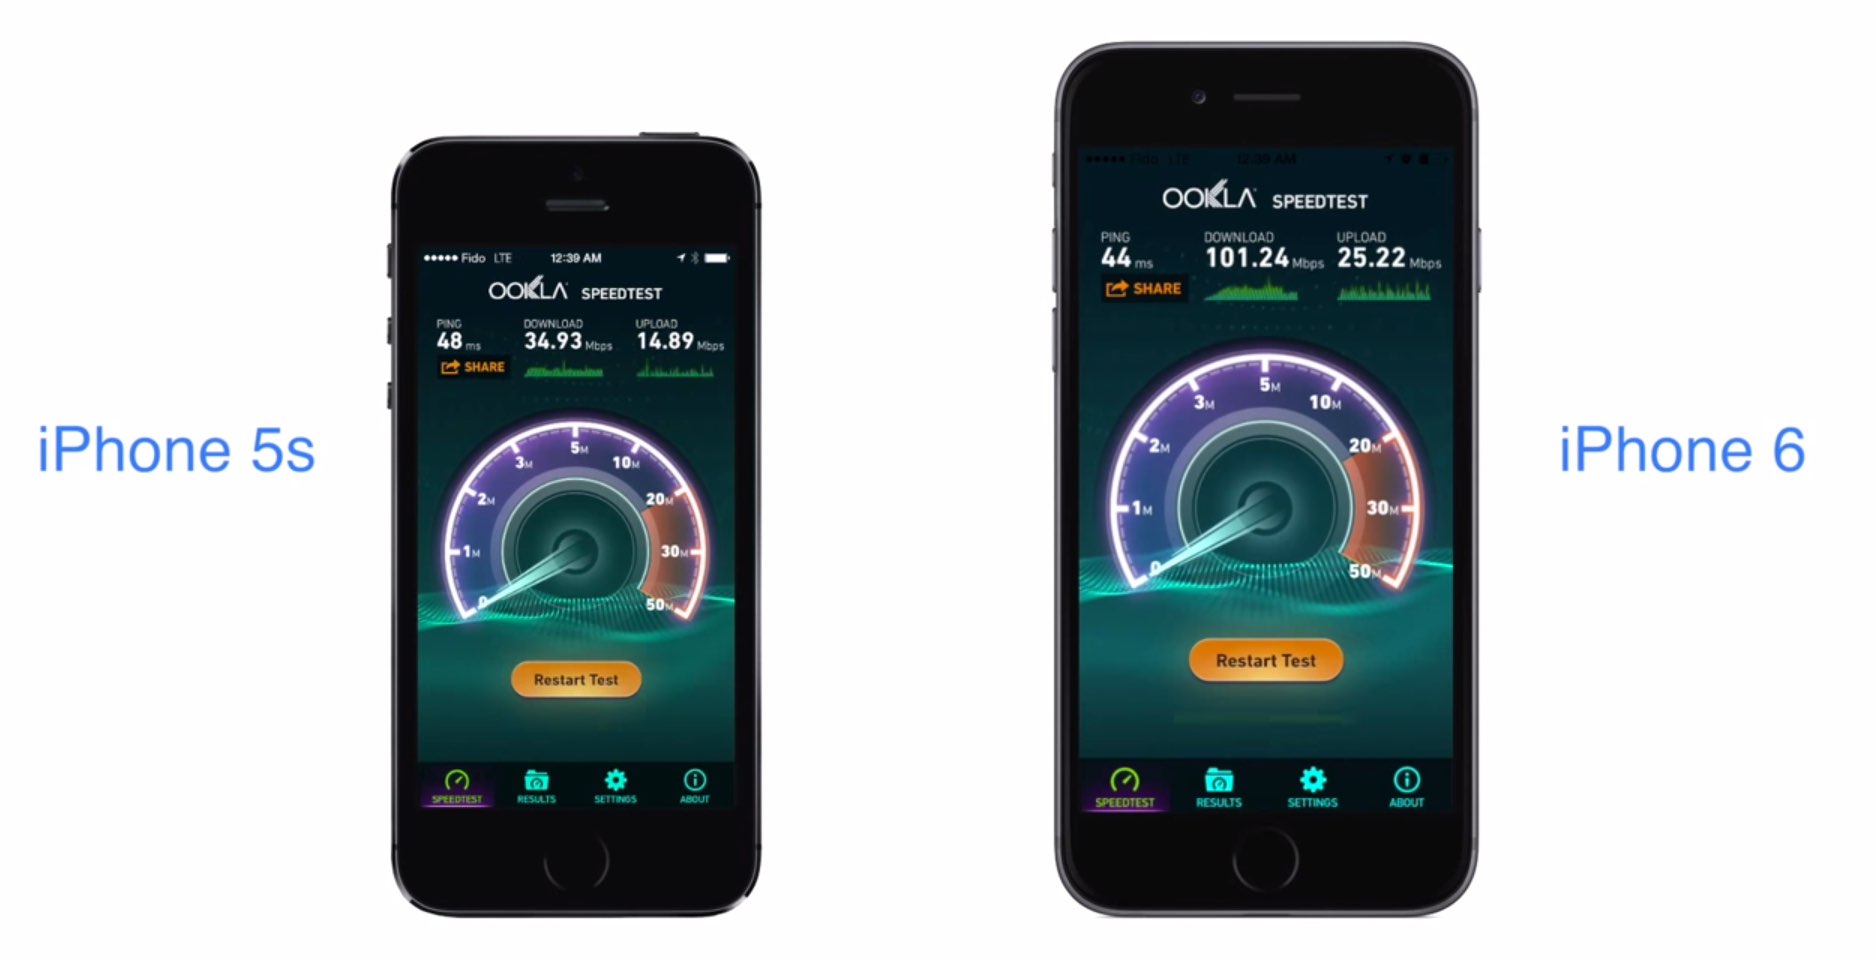 iPhone 6 LTE Speedtest: iPhone 6 deutlich schneller als iPhone 5s 4